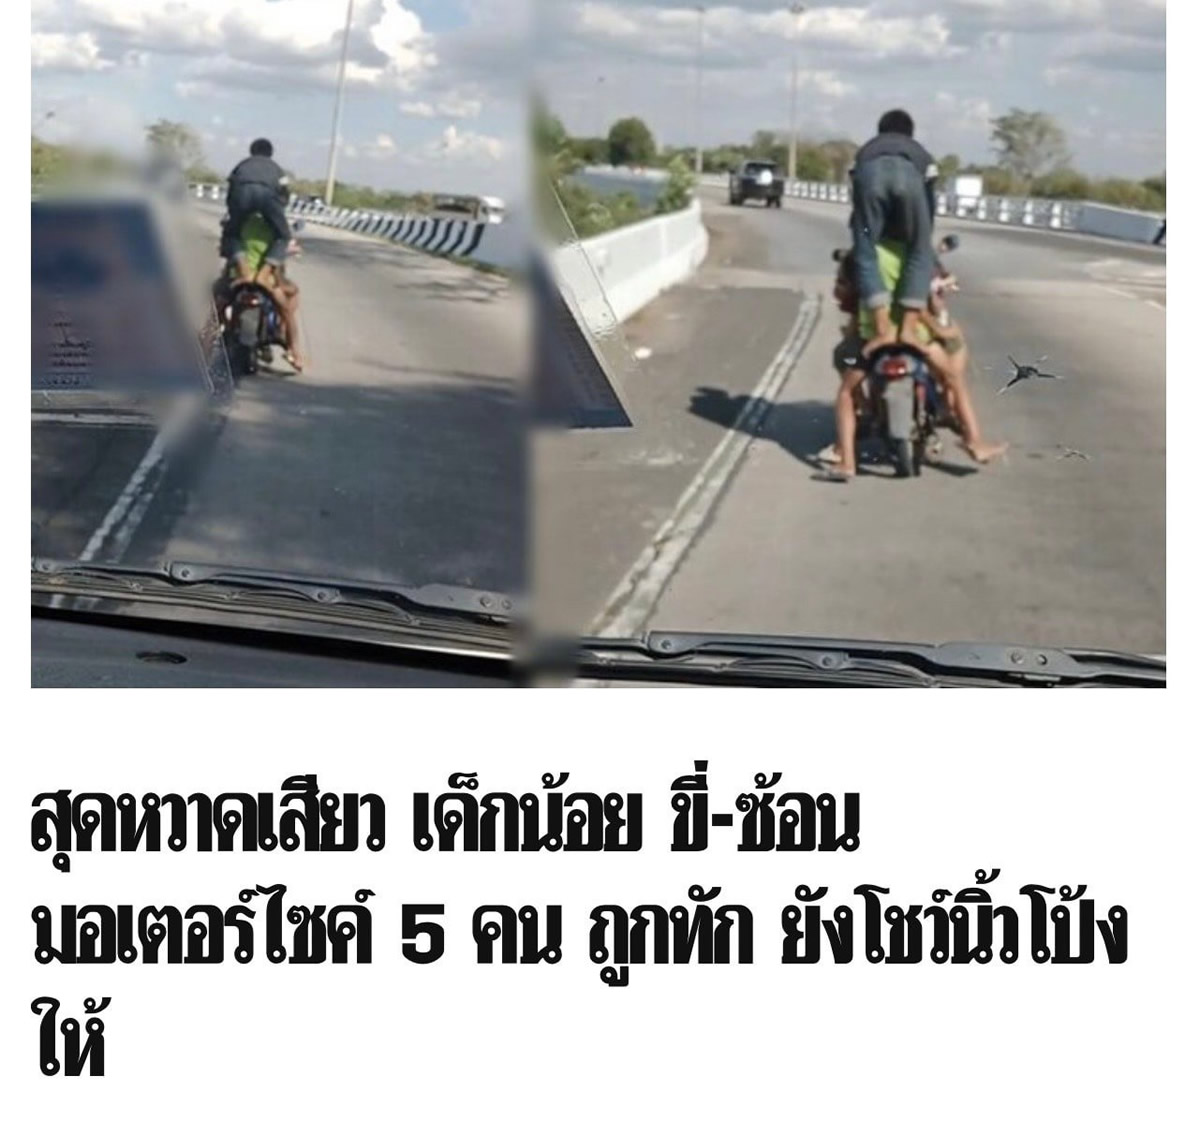 バイク5人乗りの子供たち、警察がヘルメットをプレゼント